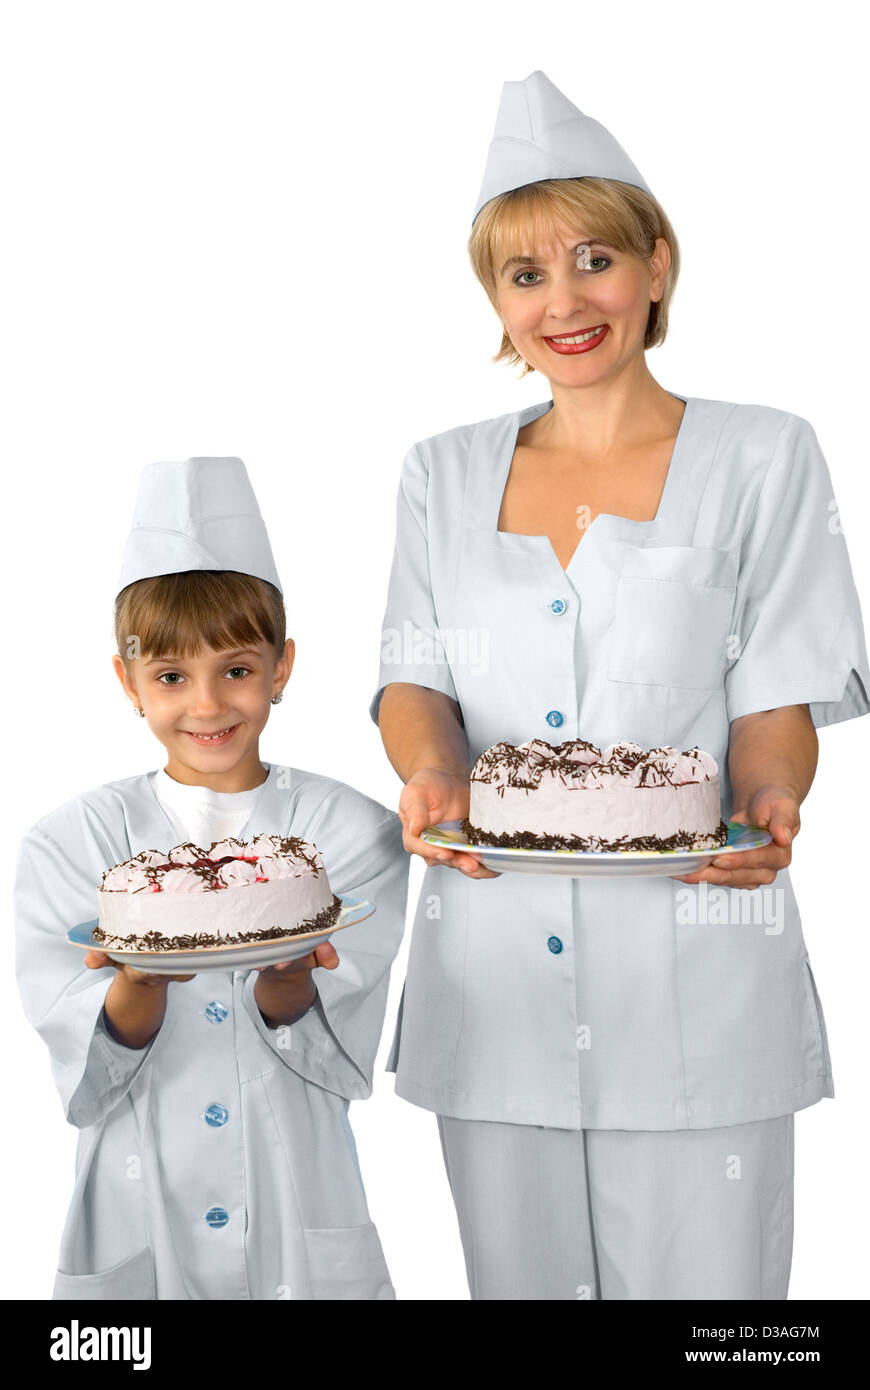 Der Konditor und Ihr kleine Helfer werden mit einem Kuchen fotografiert Stockfoto